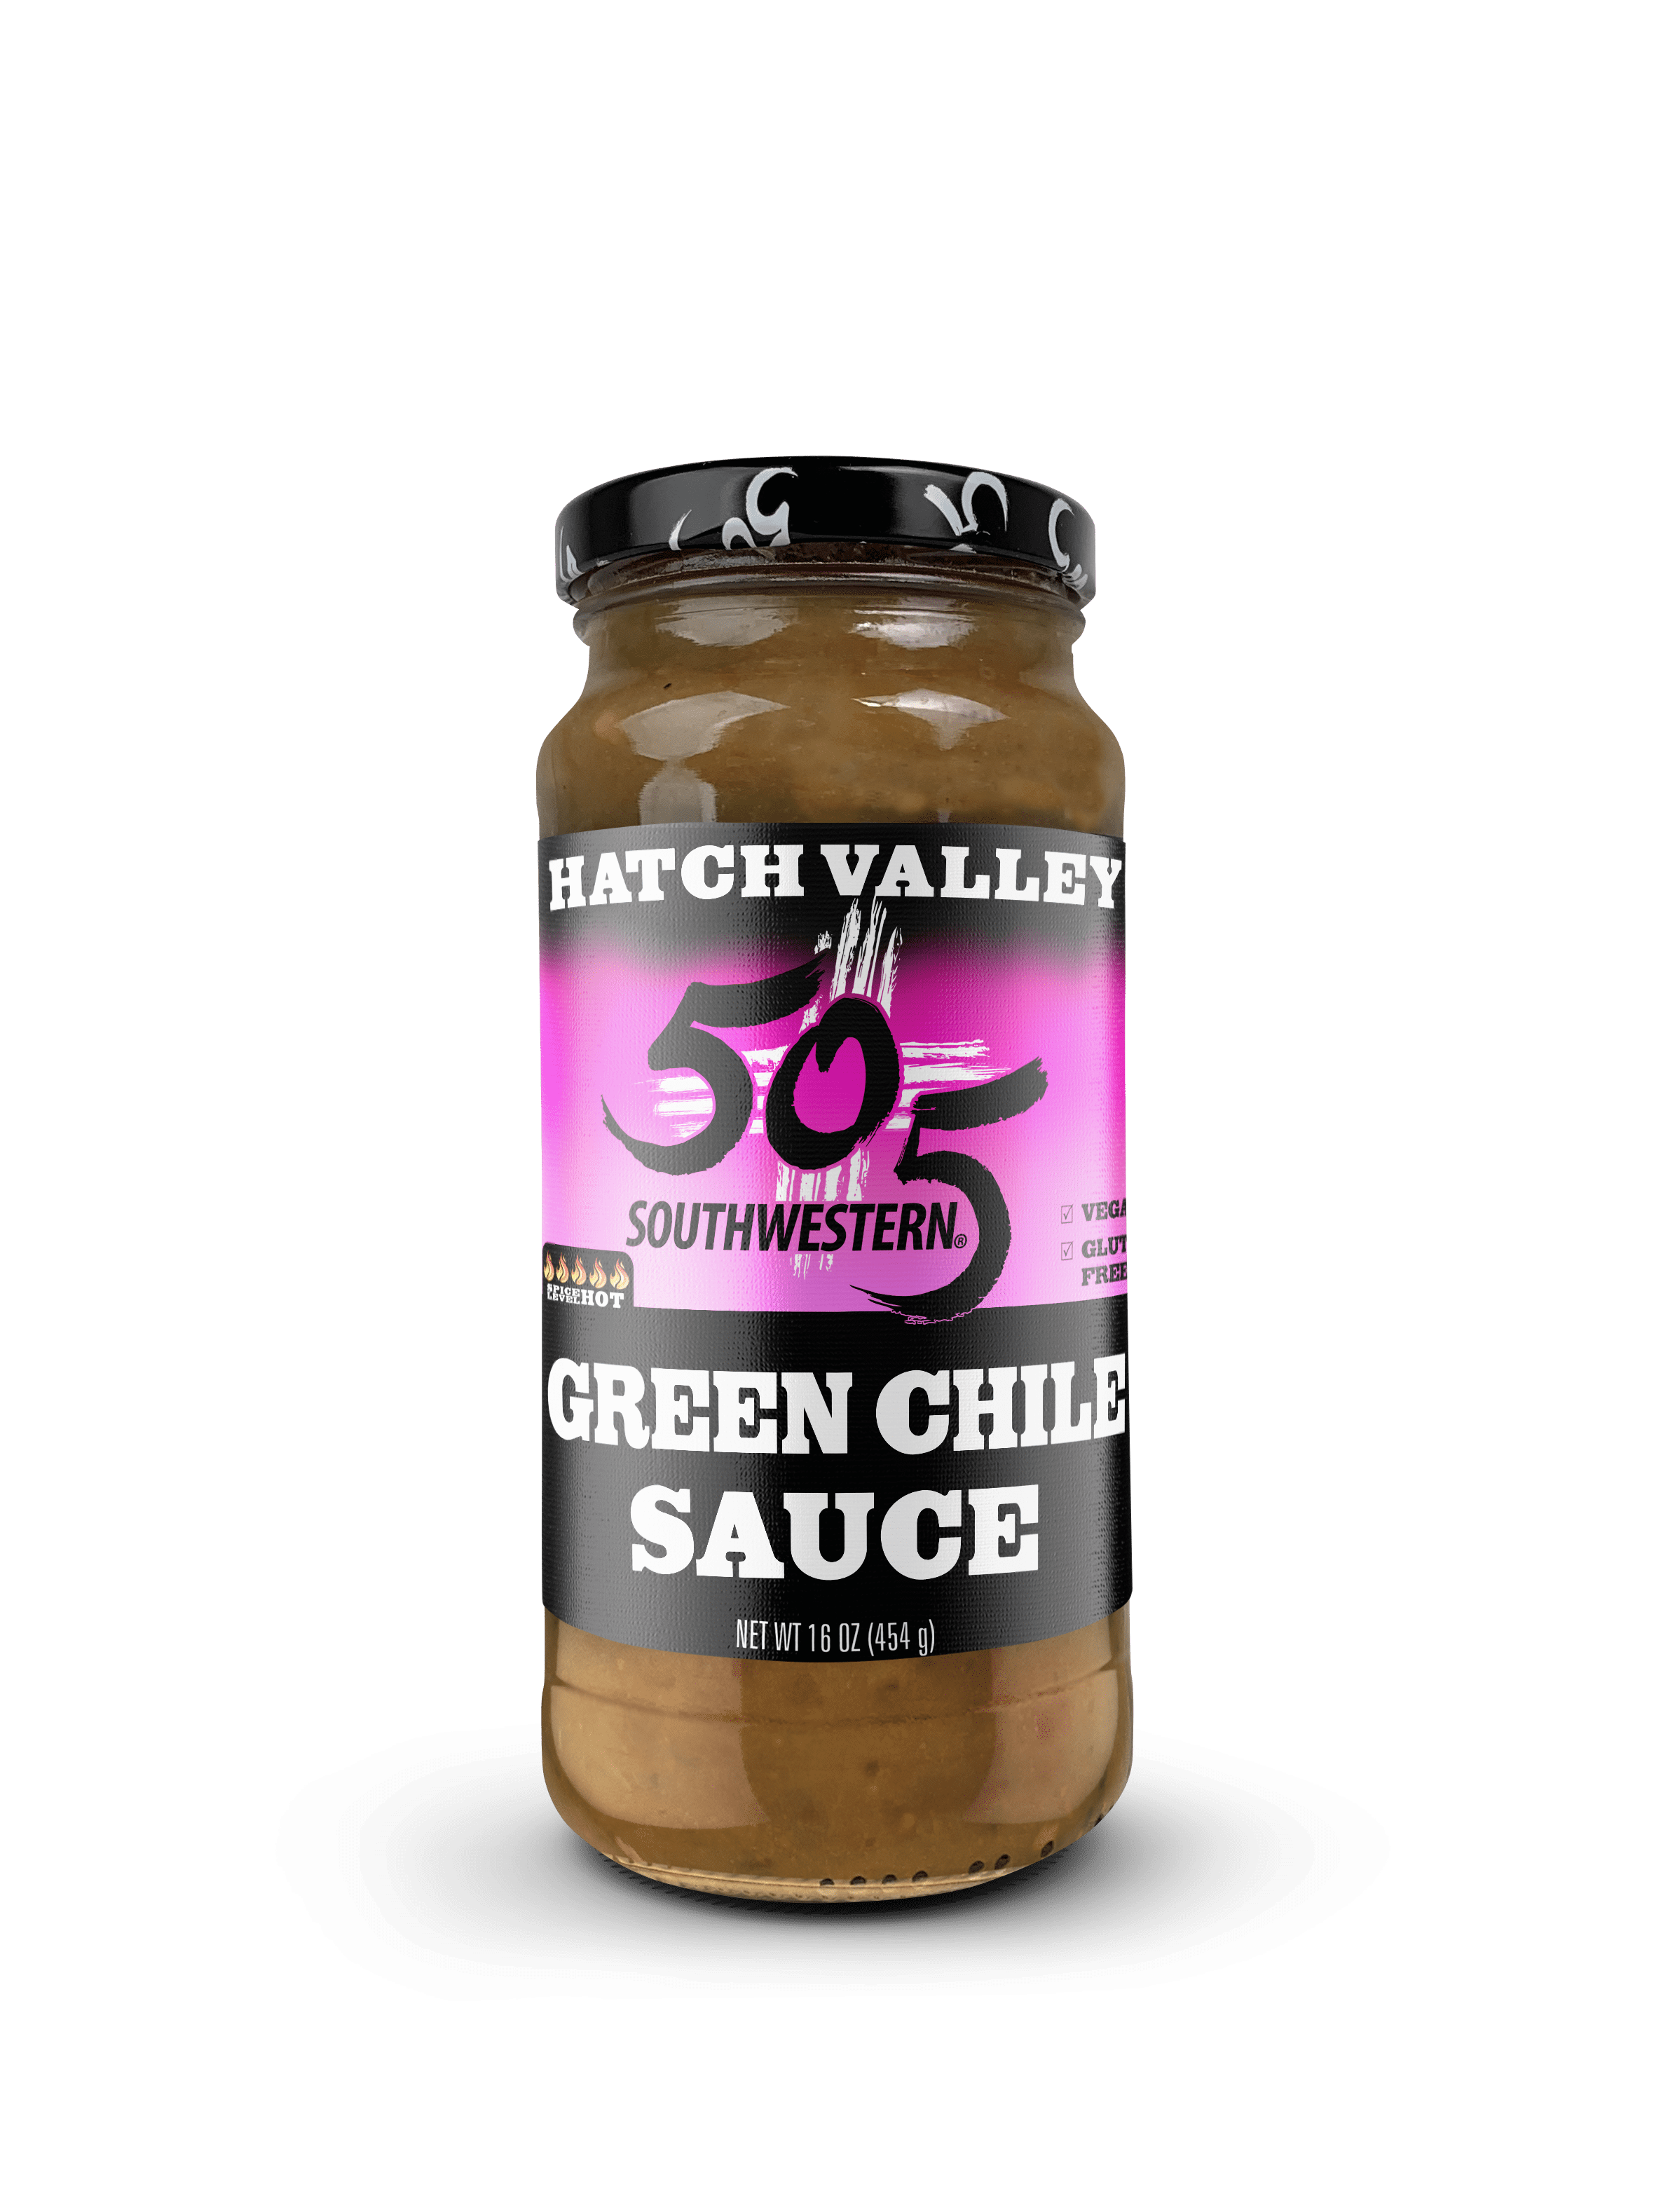 505 Southwestern Hatch Valley Green Chile Sauce (HOT) 16oz - Walmart ...